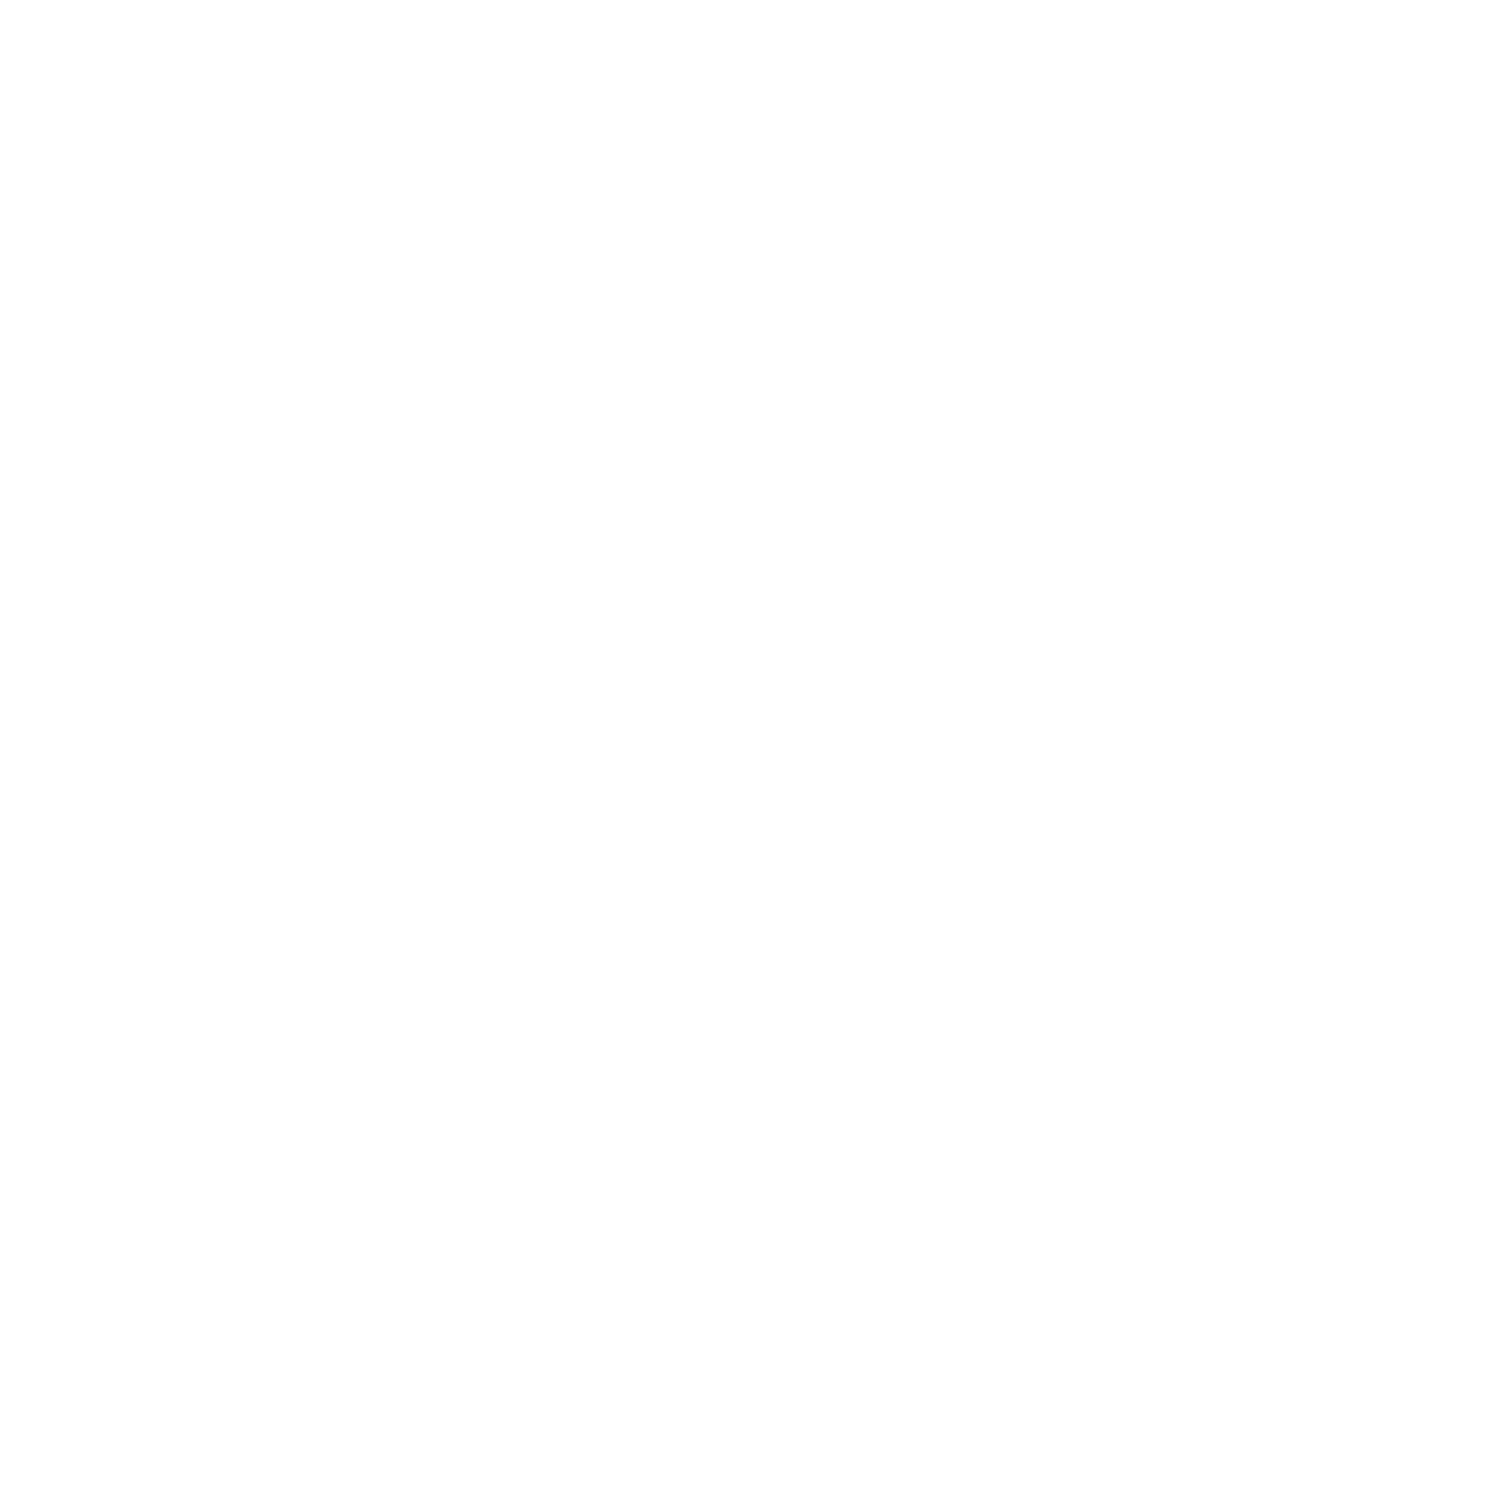 Dakota Graz'd